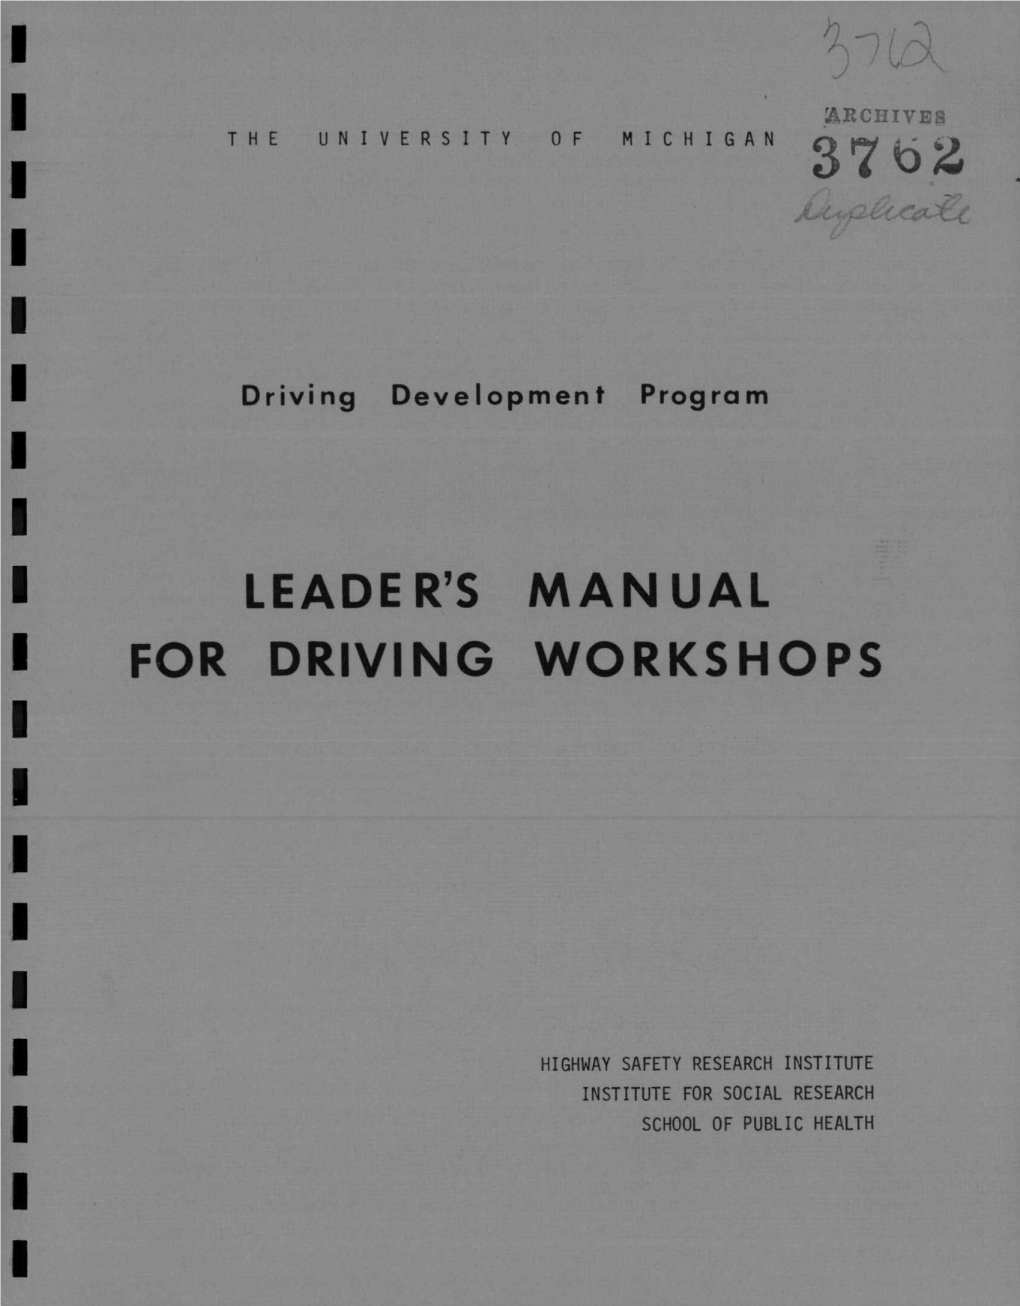 Leader's Manual Driving Workshops